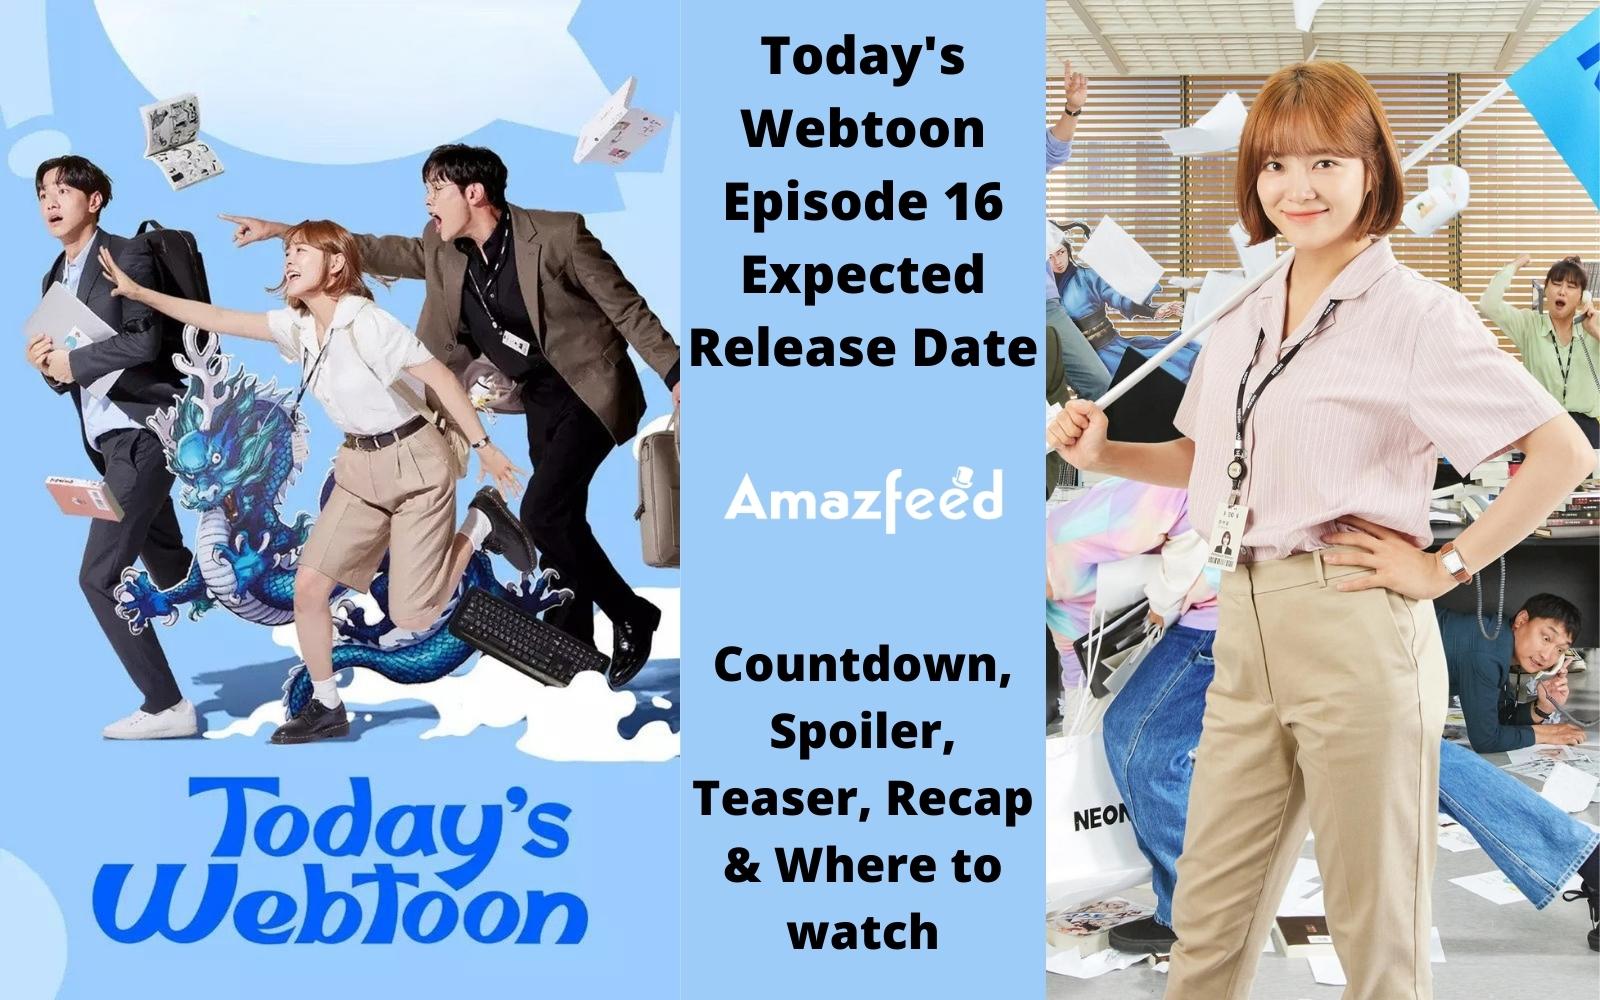 Today's Webtoon Episode 16 : Release Date, Countdown, Spoiler, Teaser, Recap & Where to watch